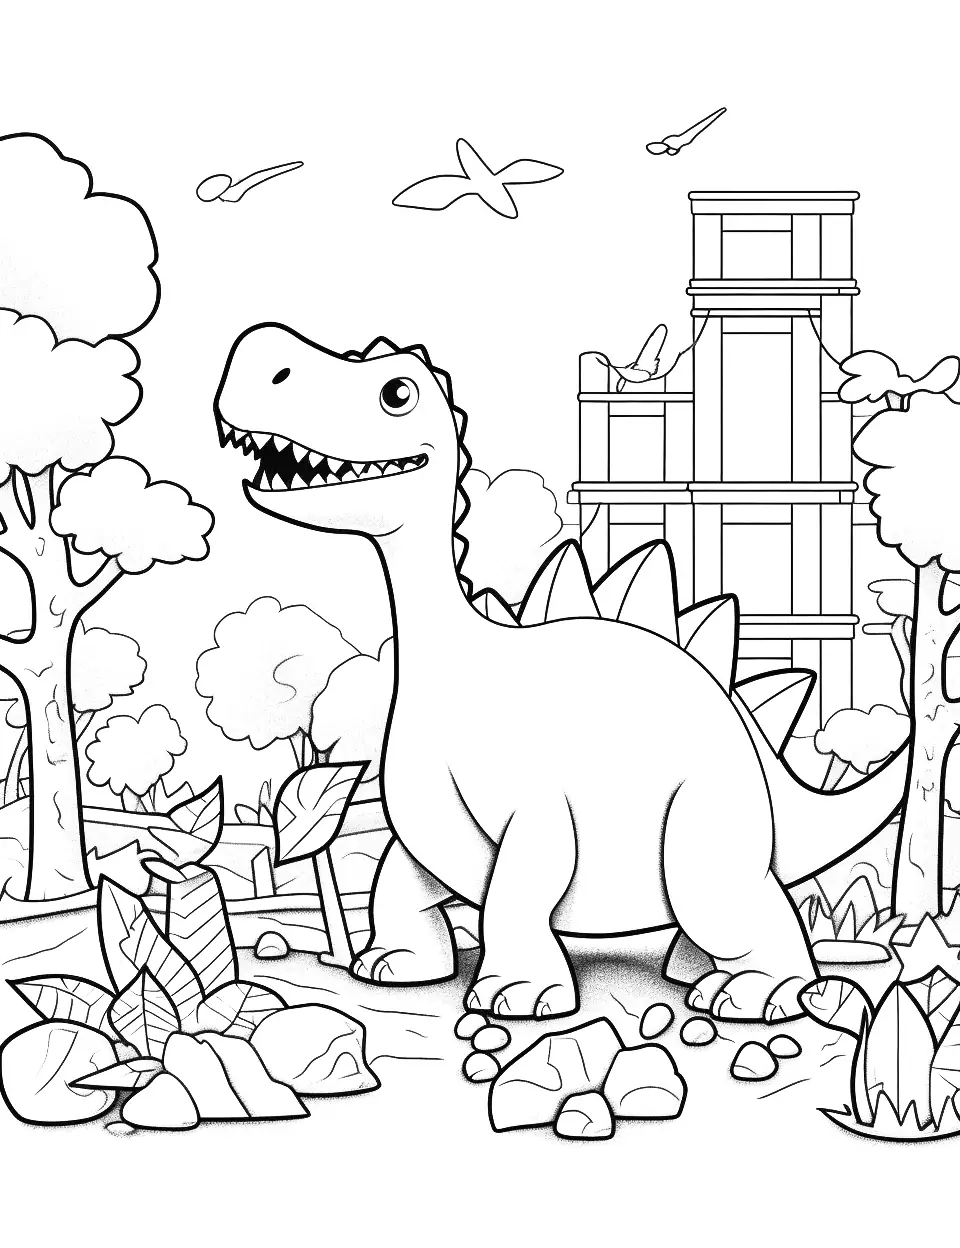 Preschool Dino Playground Dinosaur Coloring Page - Preschool-friendly dinosaurs playing on a dinosaur-themed playground.